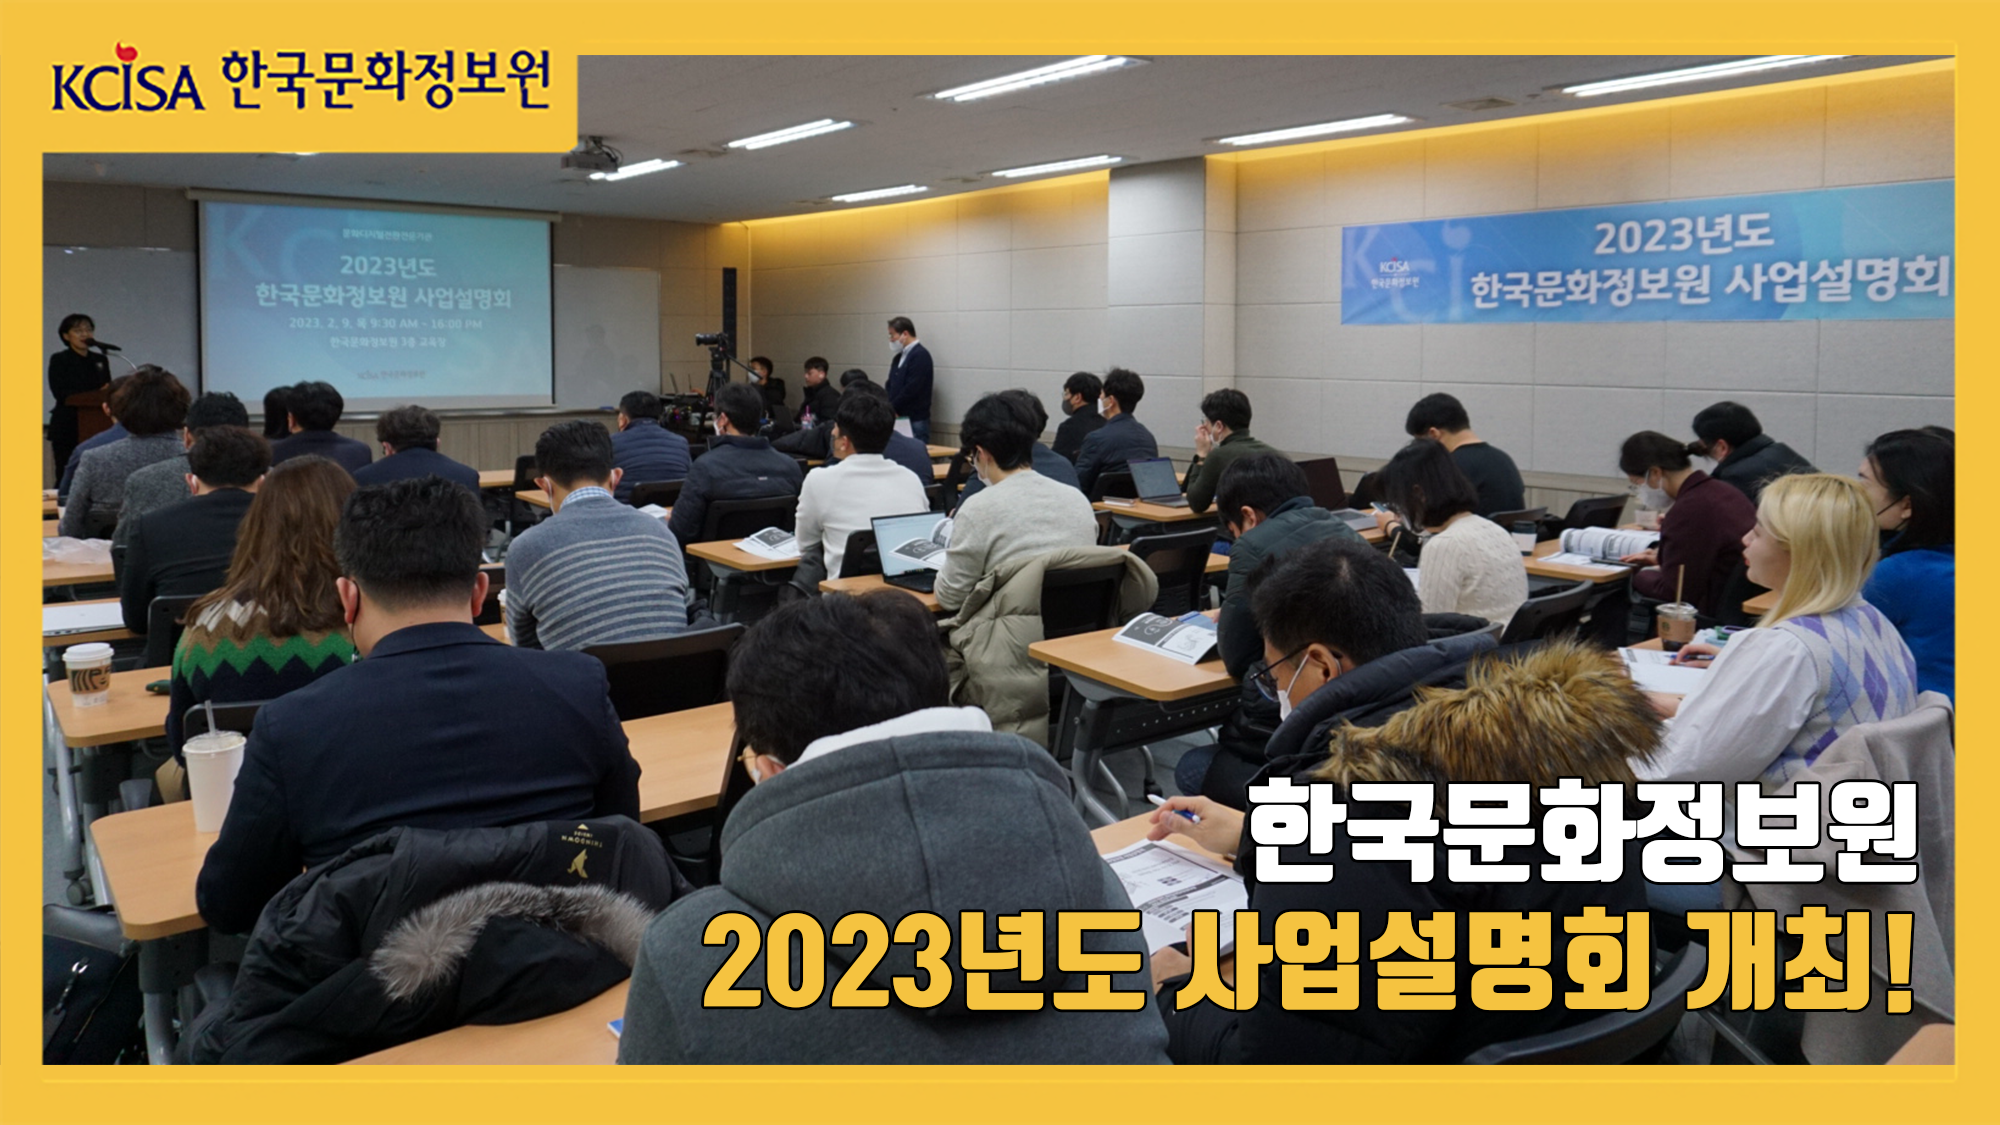 한국문화정보원 2023년도 사업설명회 개최